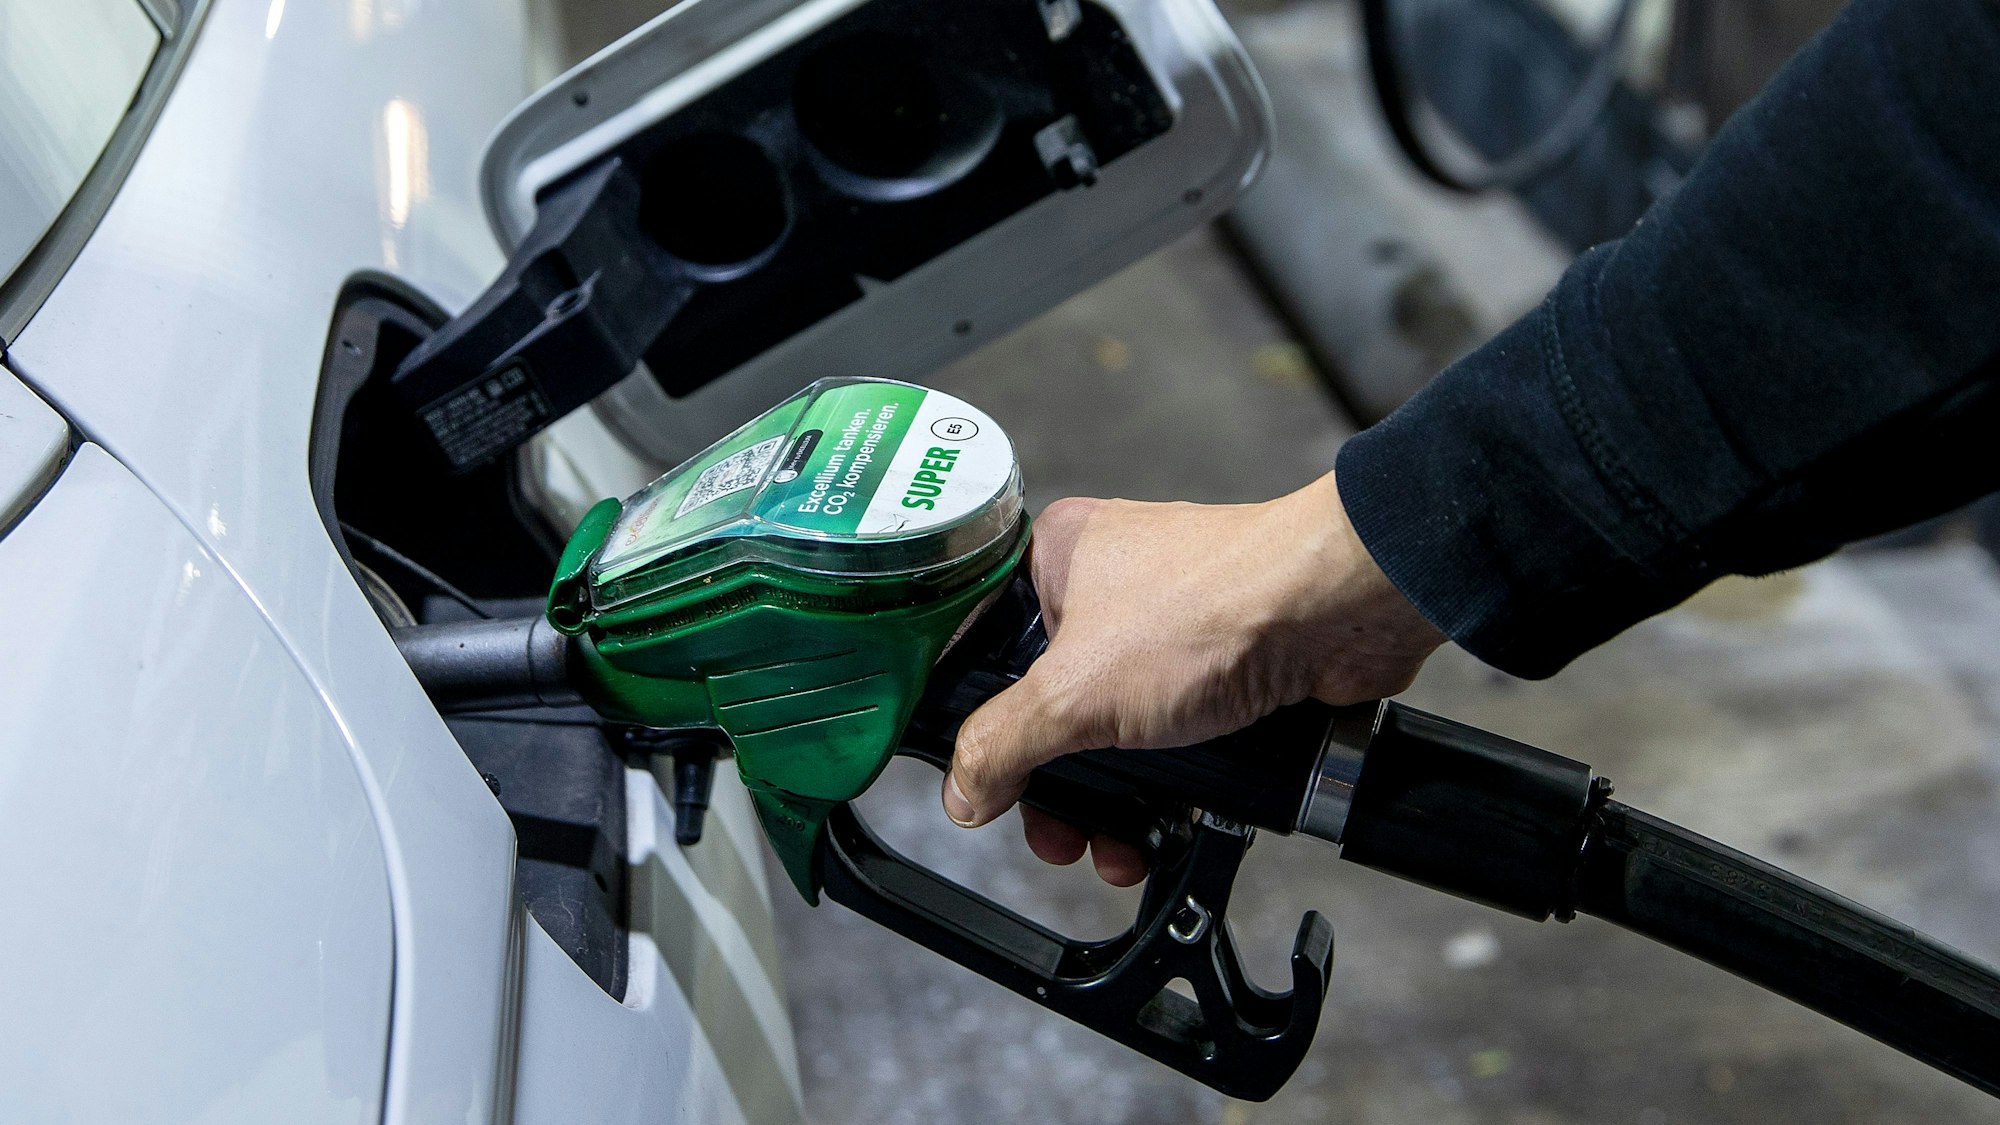 Ein Autofahrer tankt ein Auto mit Benzin Super E5 an einer Tankstelle des Mineralölkonzerns Total. Das Symbolbild wurde am 11. Oktober 2021 aufgenommen.